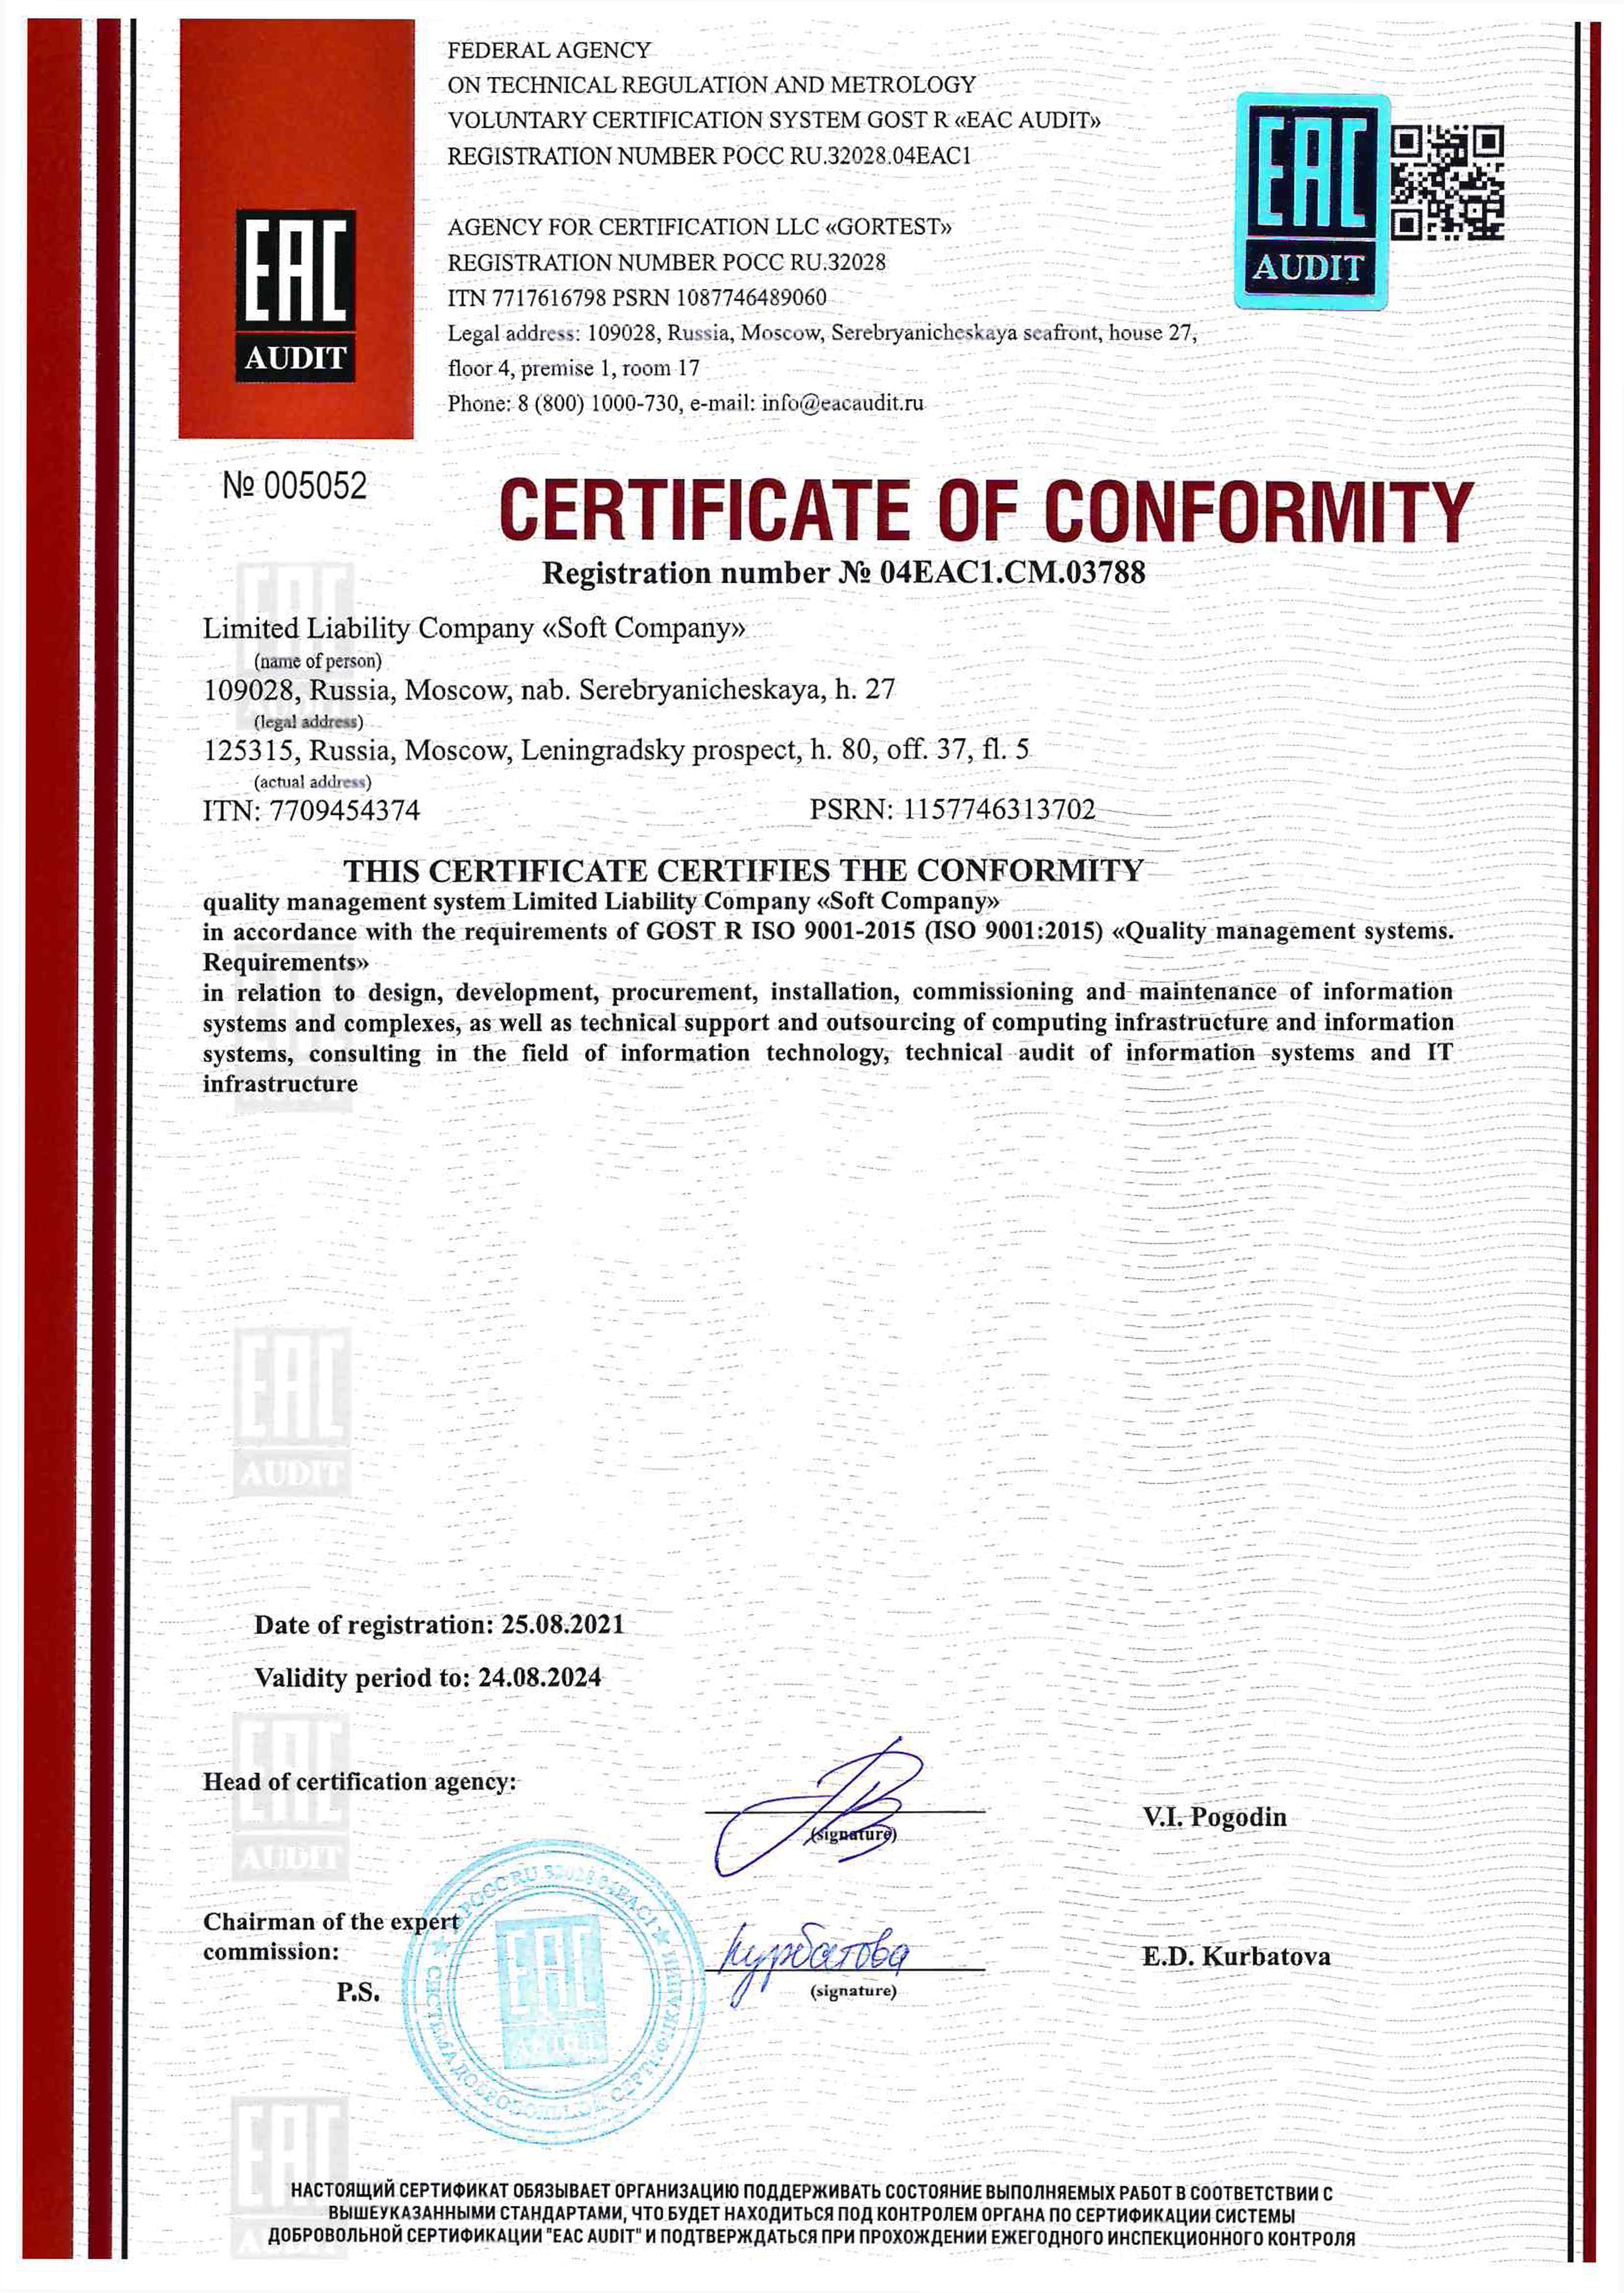 Сертификат соответствия системы менеджмента качества ГОСТ Р ИСО 9001-2015 (ISO 9001:2015) на английском языке